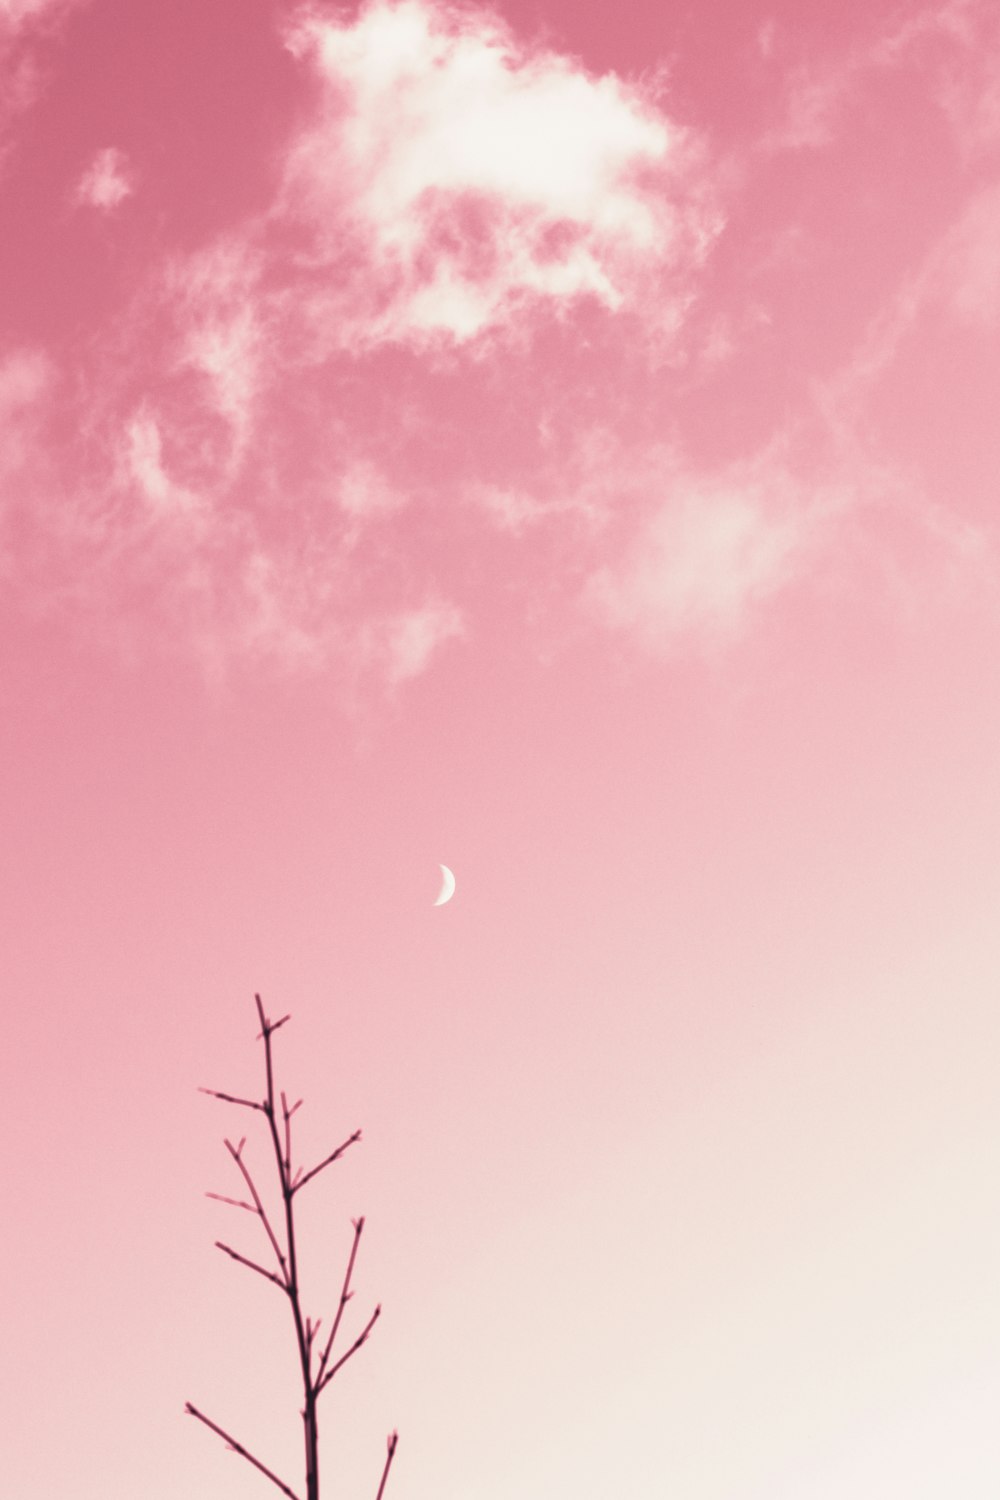 cielo rosa y azul con luna